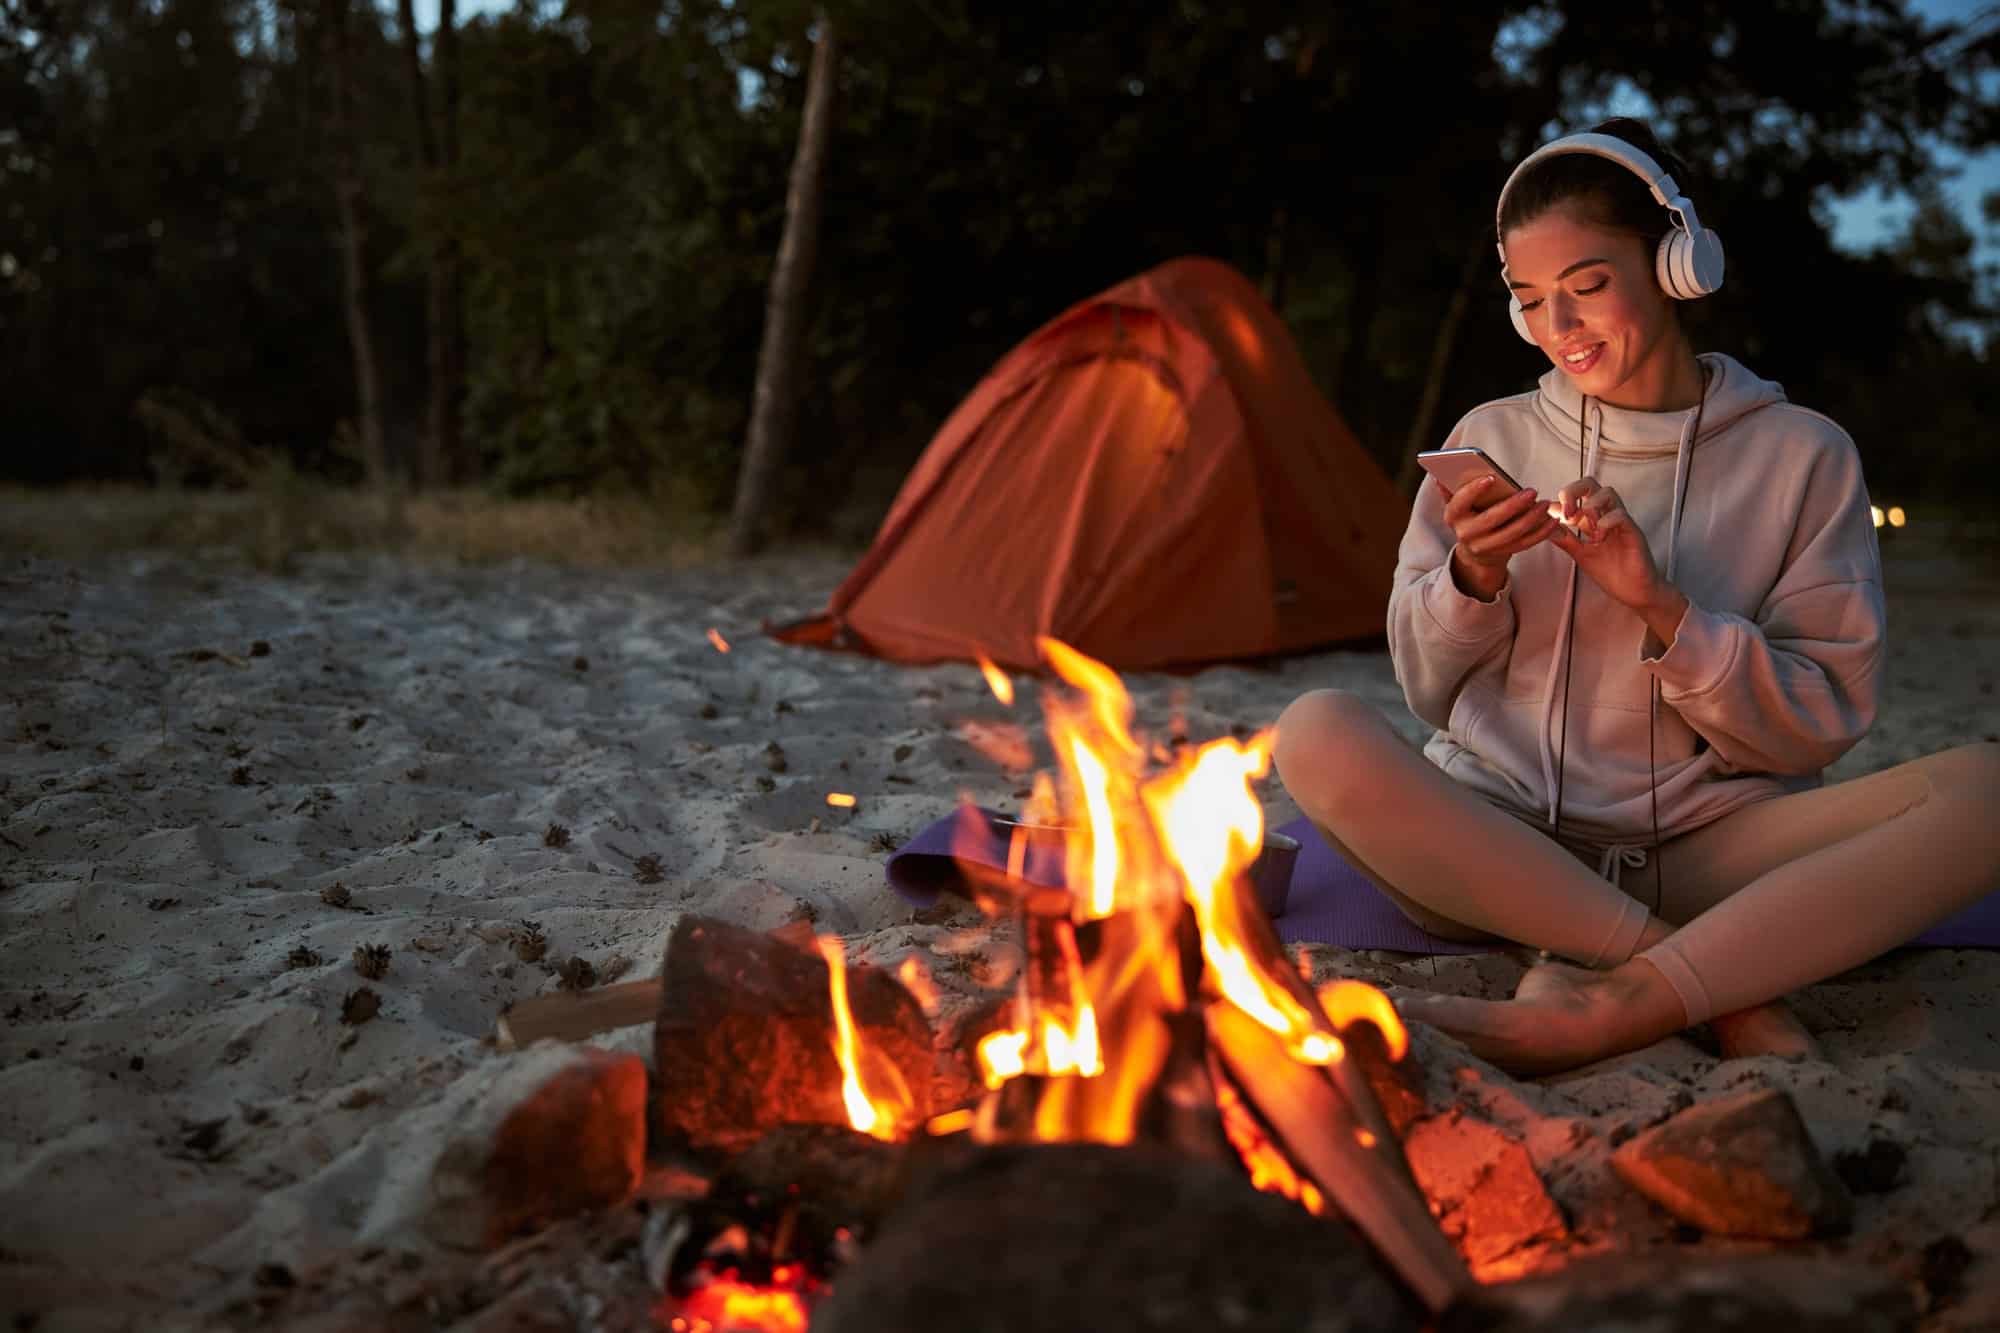 La couverture réseau mobile est-elle bonne dans ces campings ?